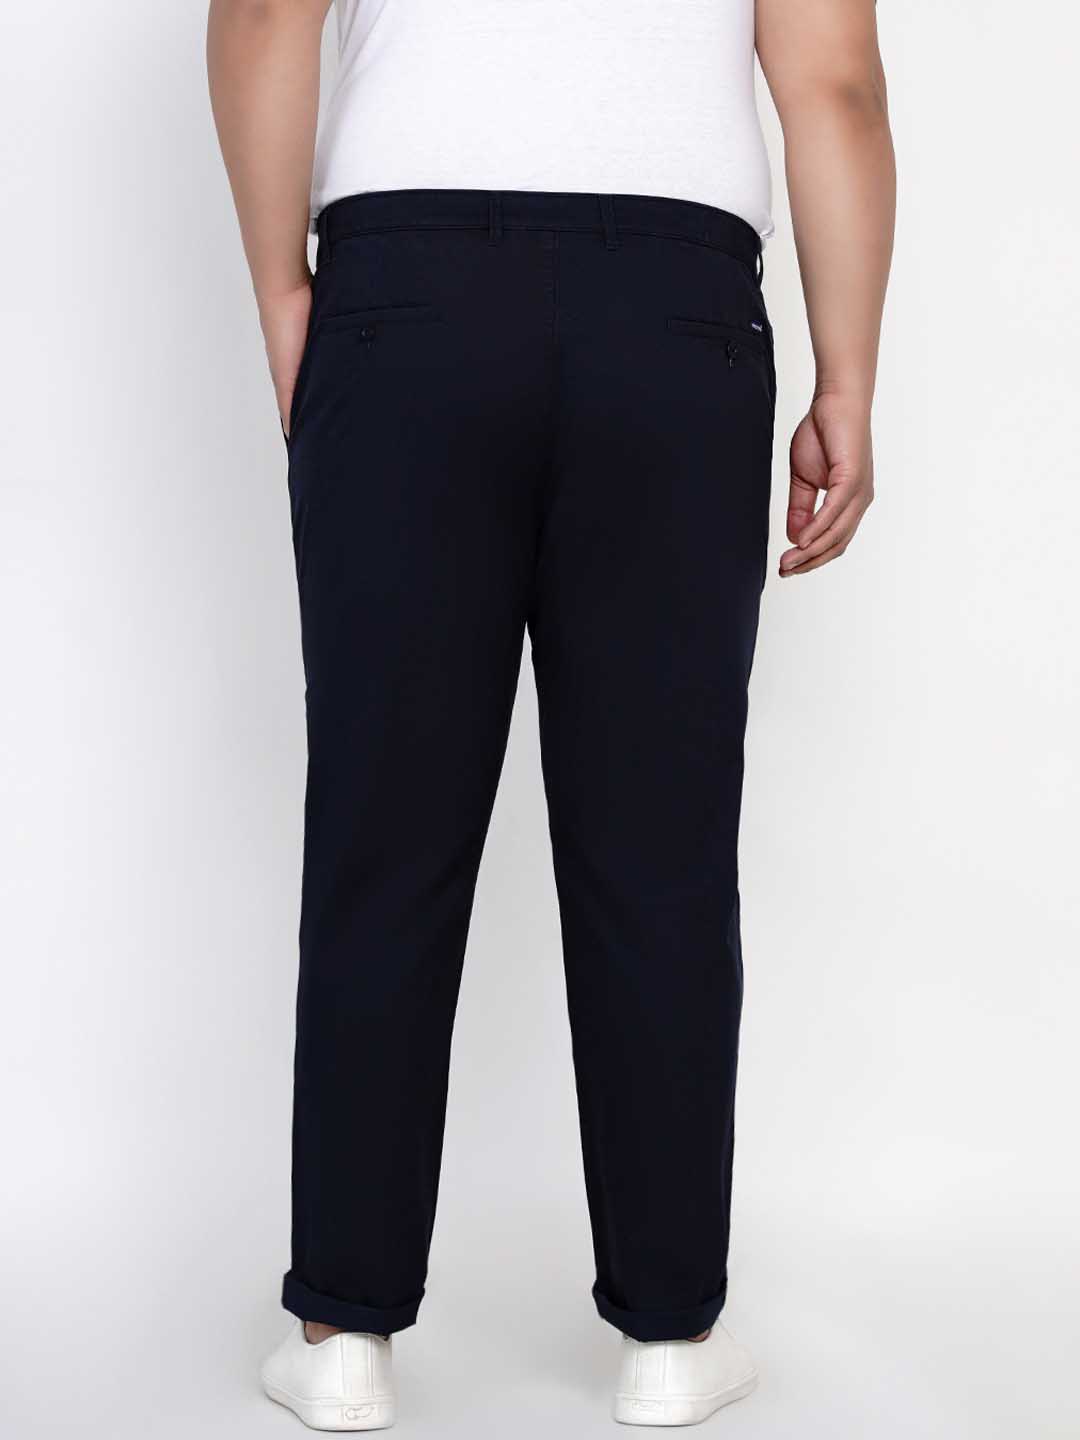 bottomwear/trousers/JPTR2195I/jptr2195i-4.jpg